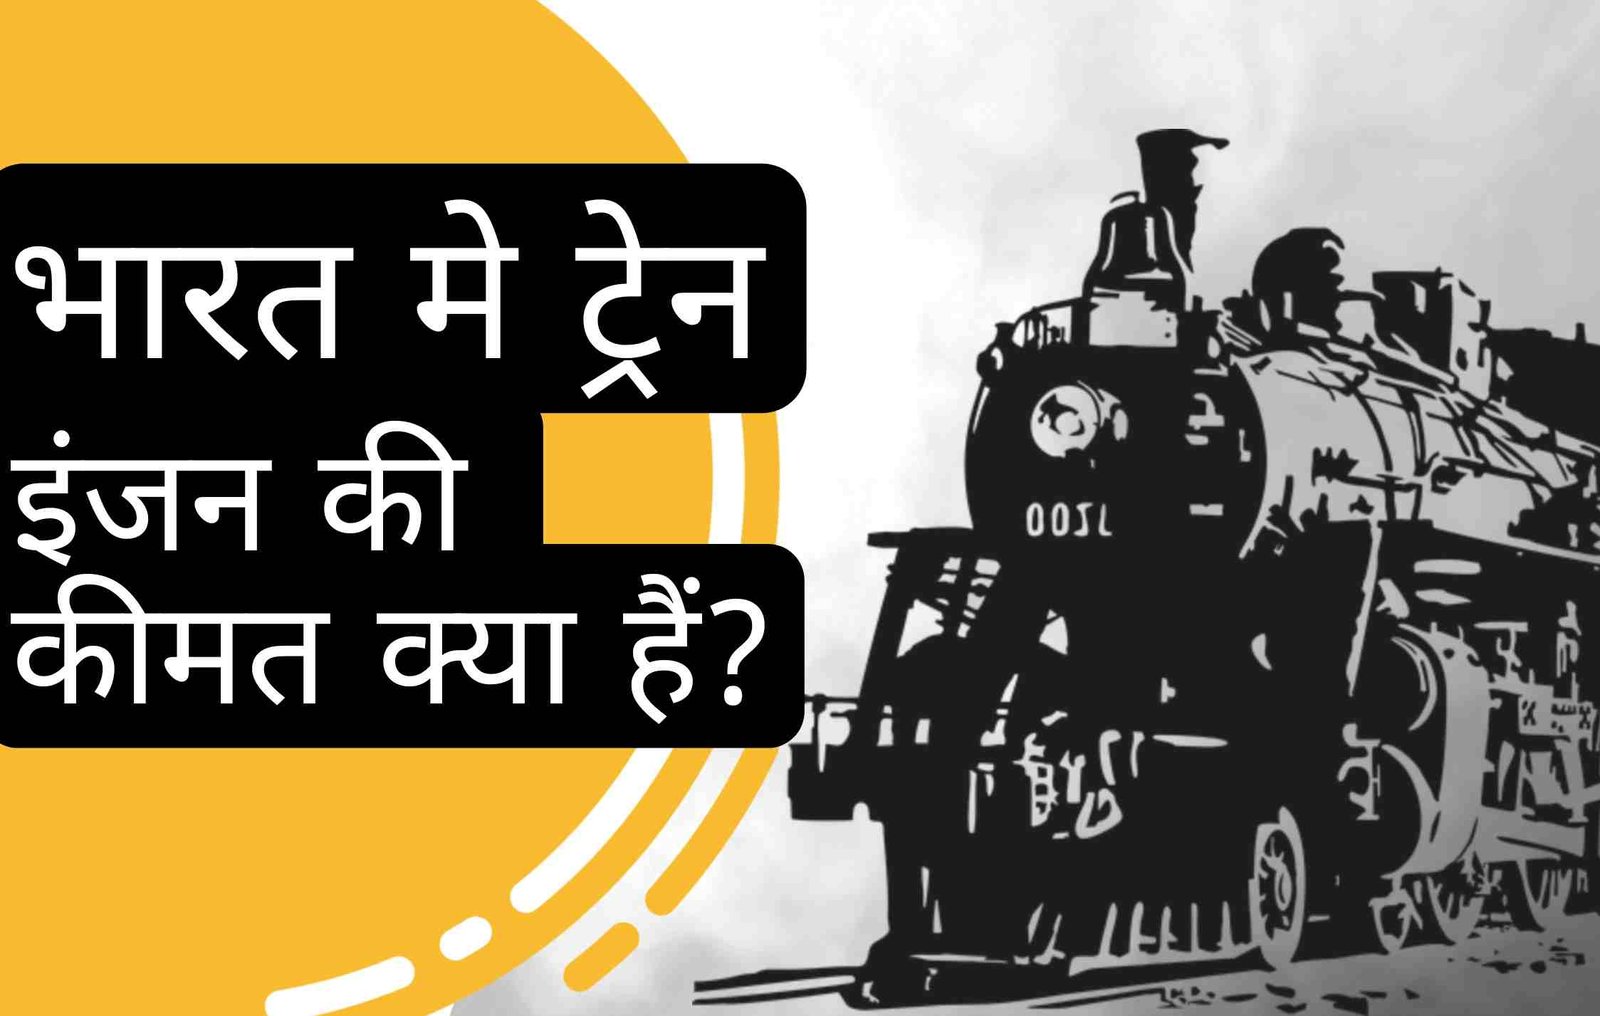 भारत में ट्रेन इंजन की कीमत क्या है?